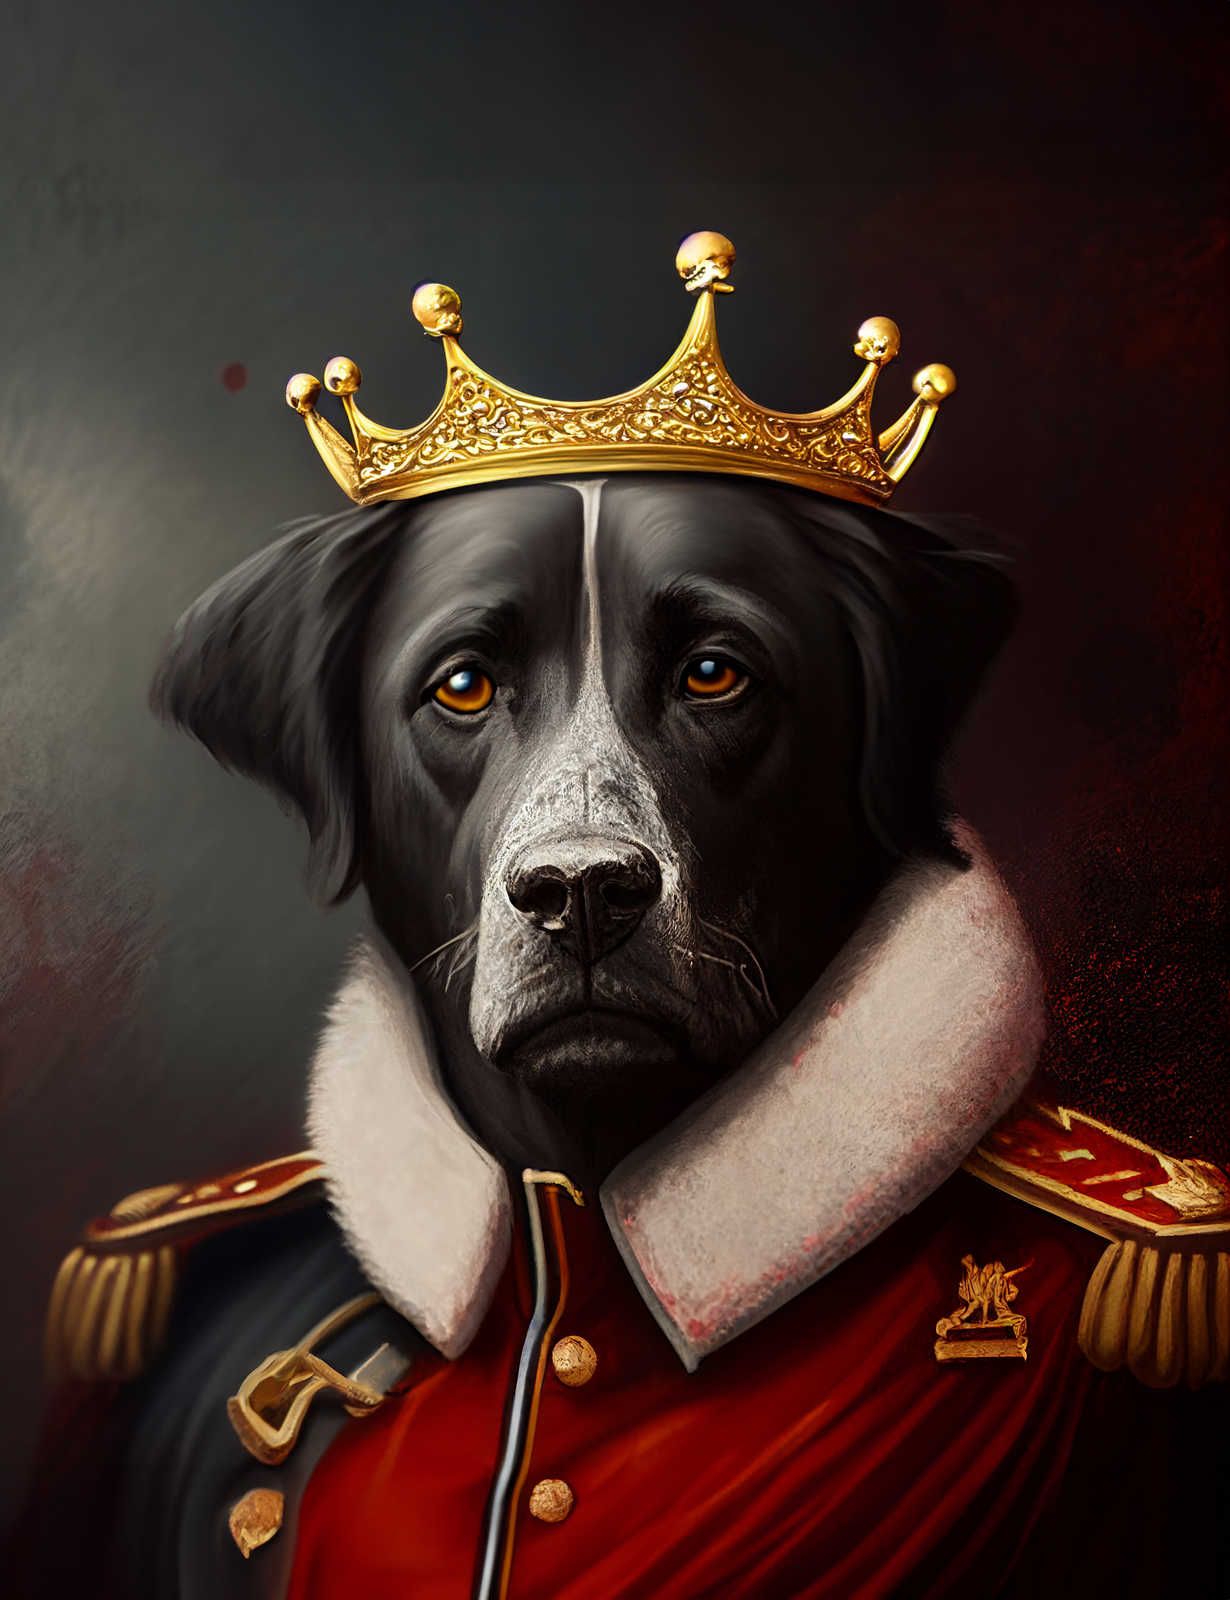             KI-Leinwandbild »Royal Dog« – 80 cm x 120 cm
        